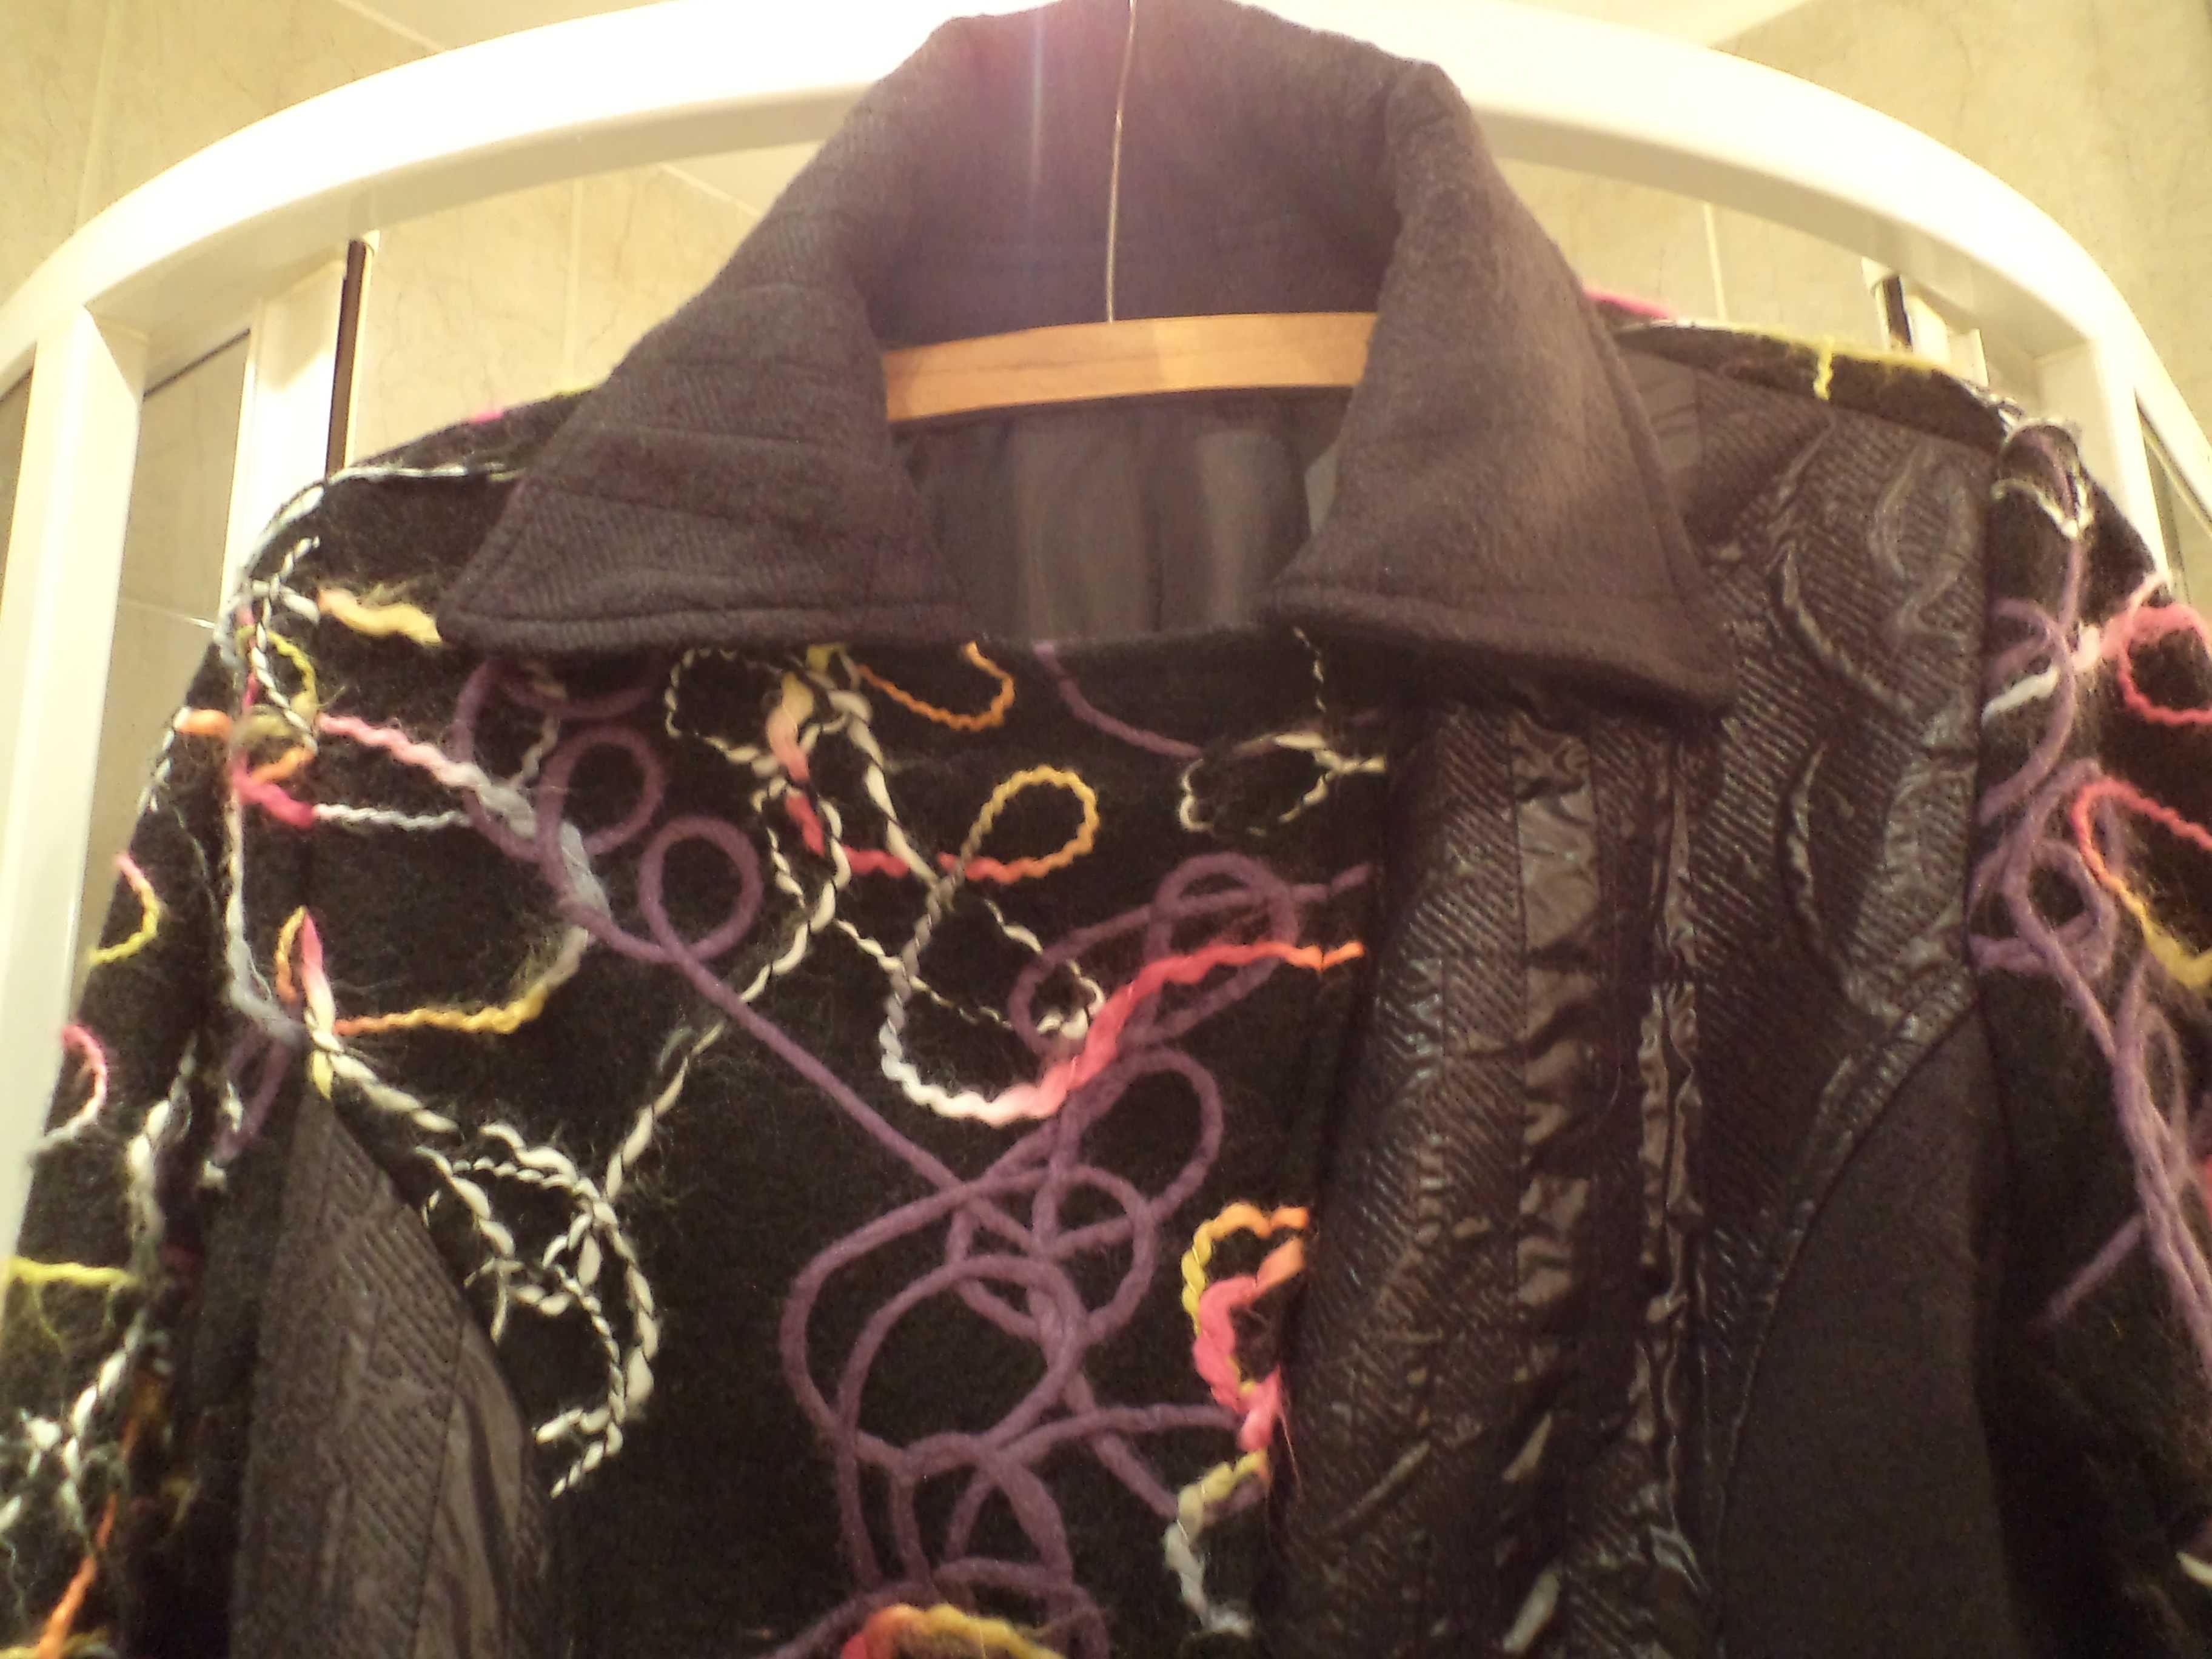 Włoski czarny wełniany płaszcz kolorowy ornament M/L